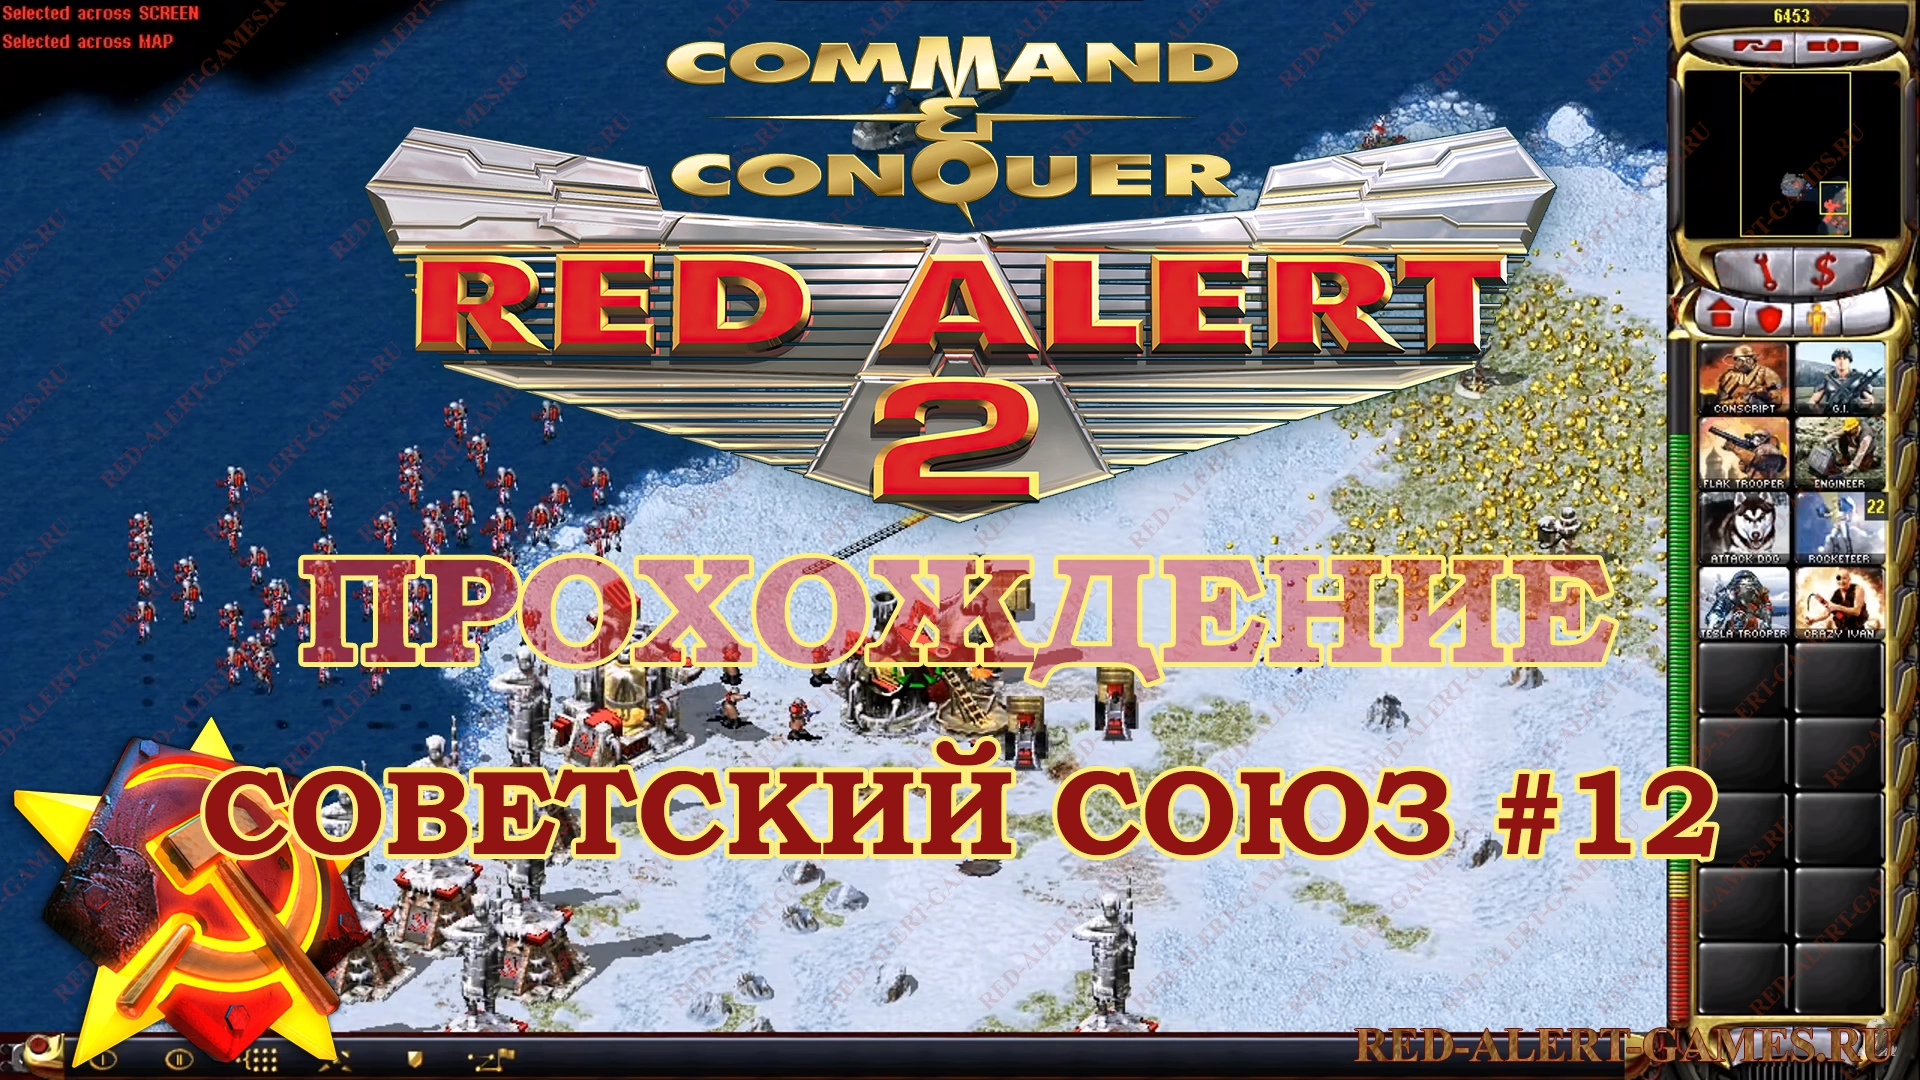 Red Alert 2 Прохождение Советский Союз - Миссия 12. Полярный шторм (Polar Storm)